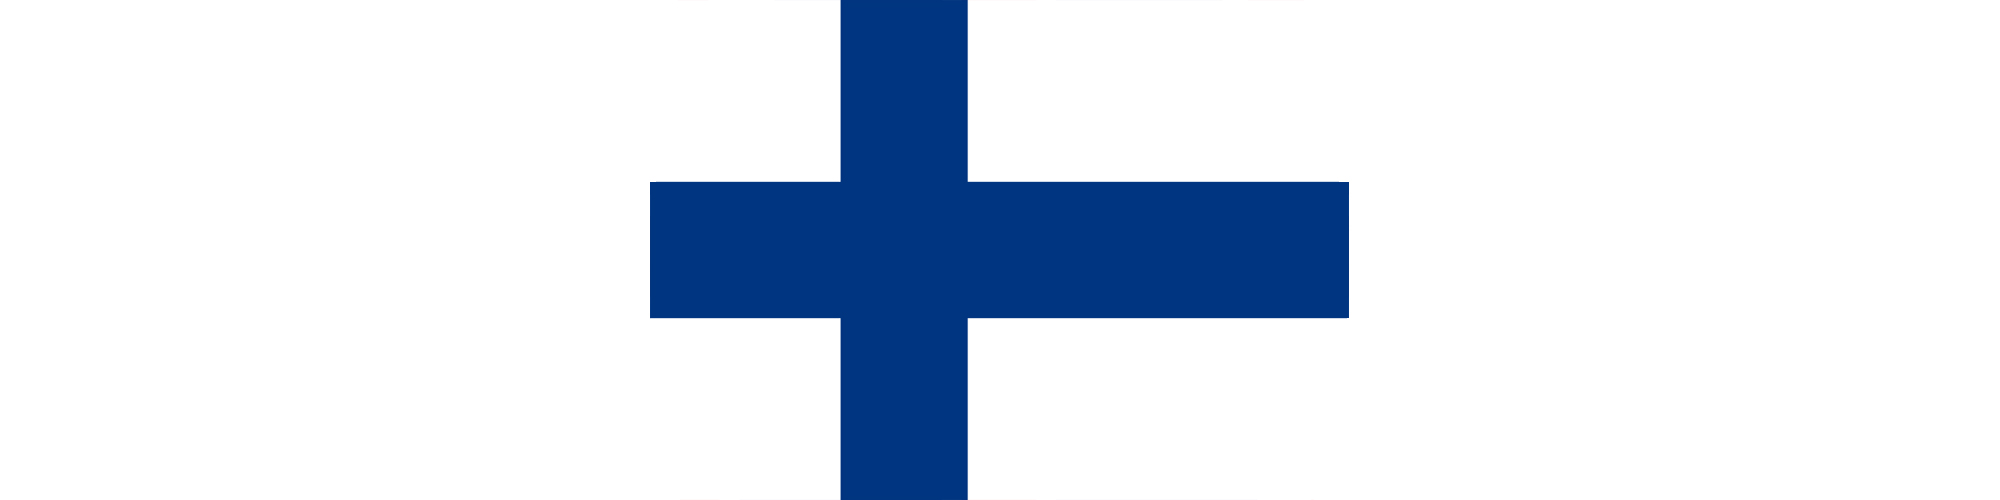 フィンランドやノルウェイなどの北欧諸国は、世界的に見たBIM先進国です。